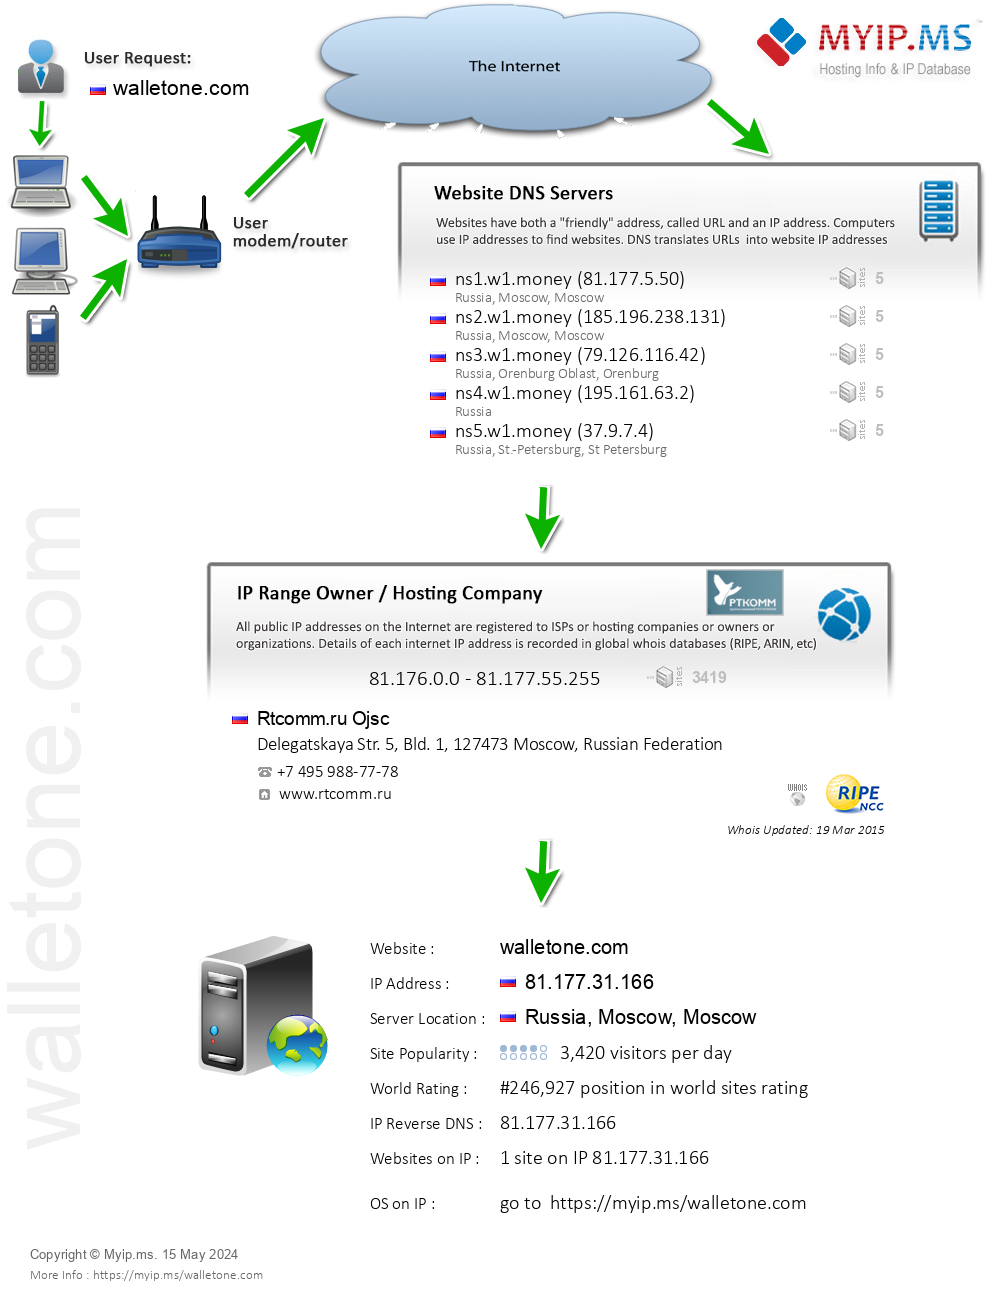 Walletone.com - Website Hosting Visual IP Diagram